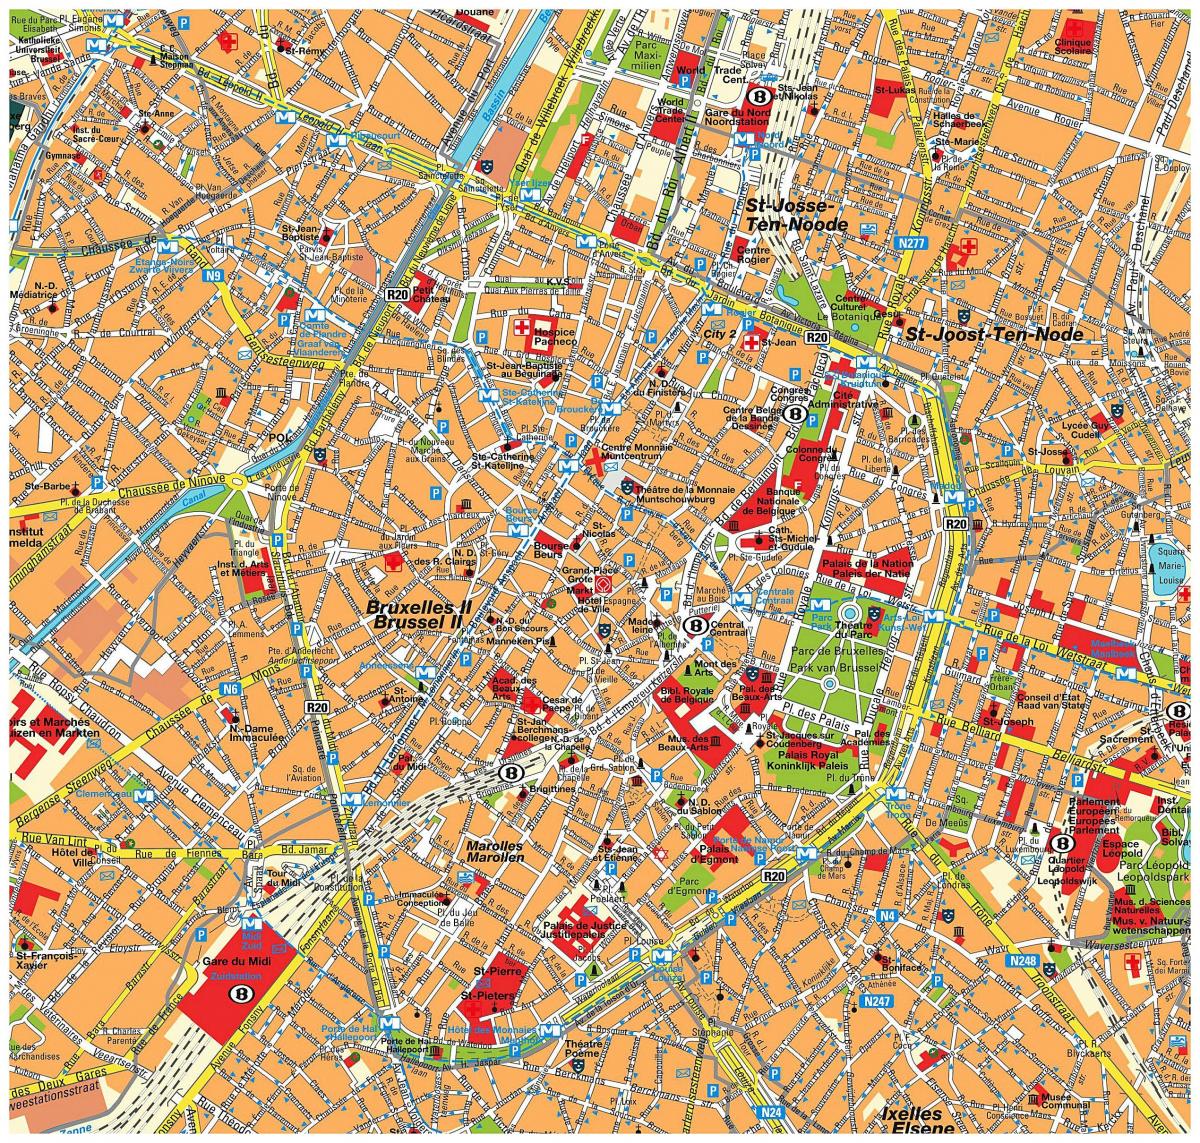 Plan du centre ville de Brussels